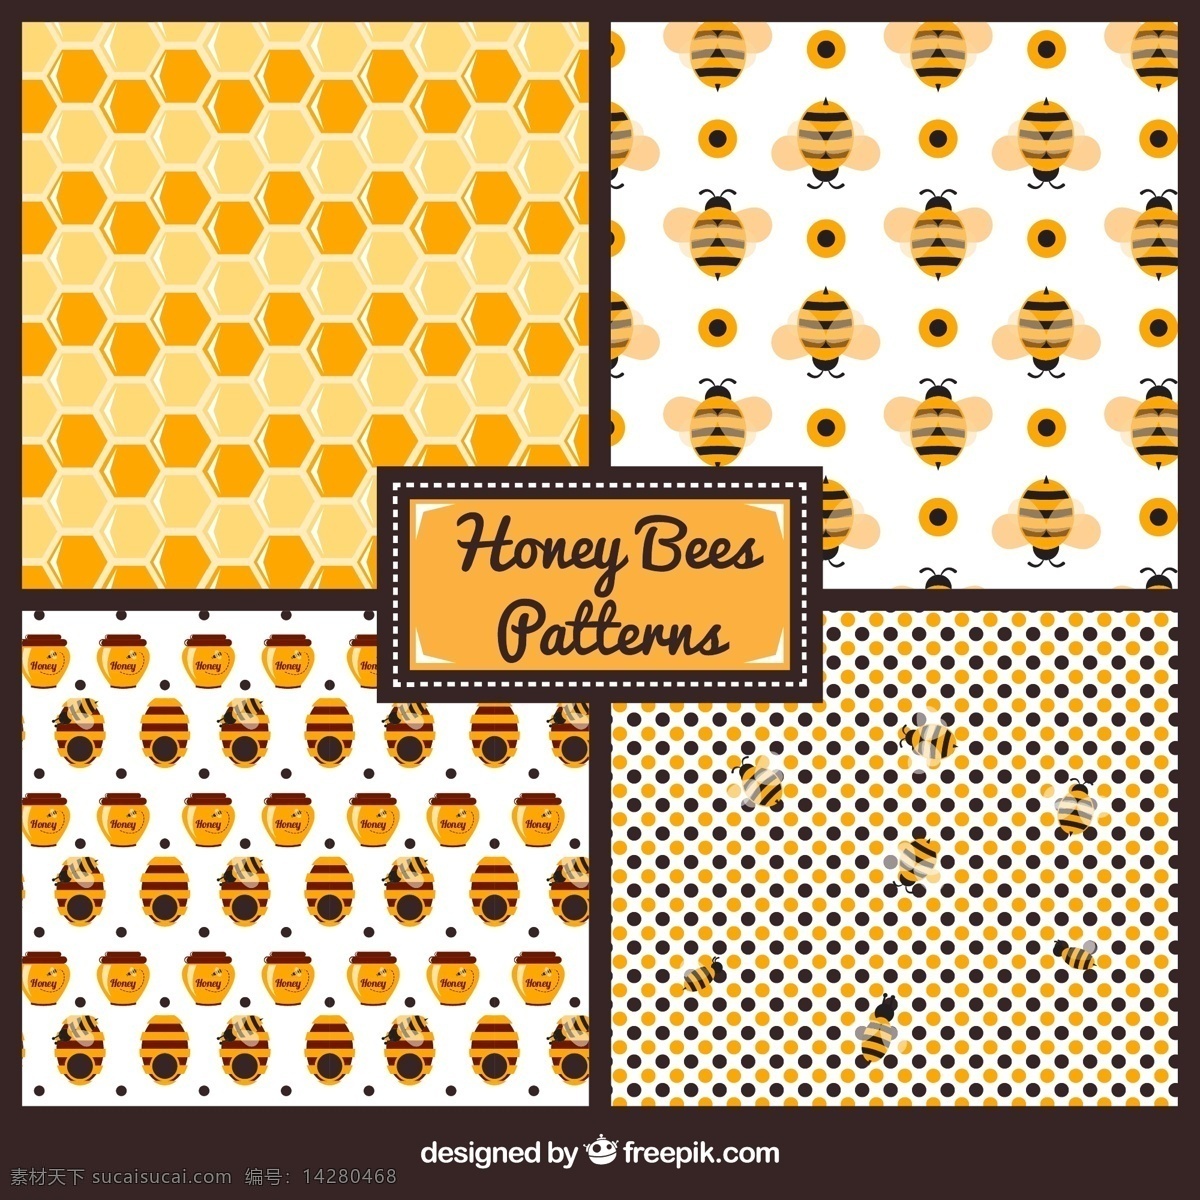 可爱 蜜蜂 图案 蜜蜂图案 蜂蜜图案 装饰 墙纸 印花 服装 卡通图案 白色